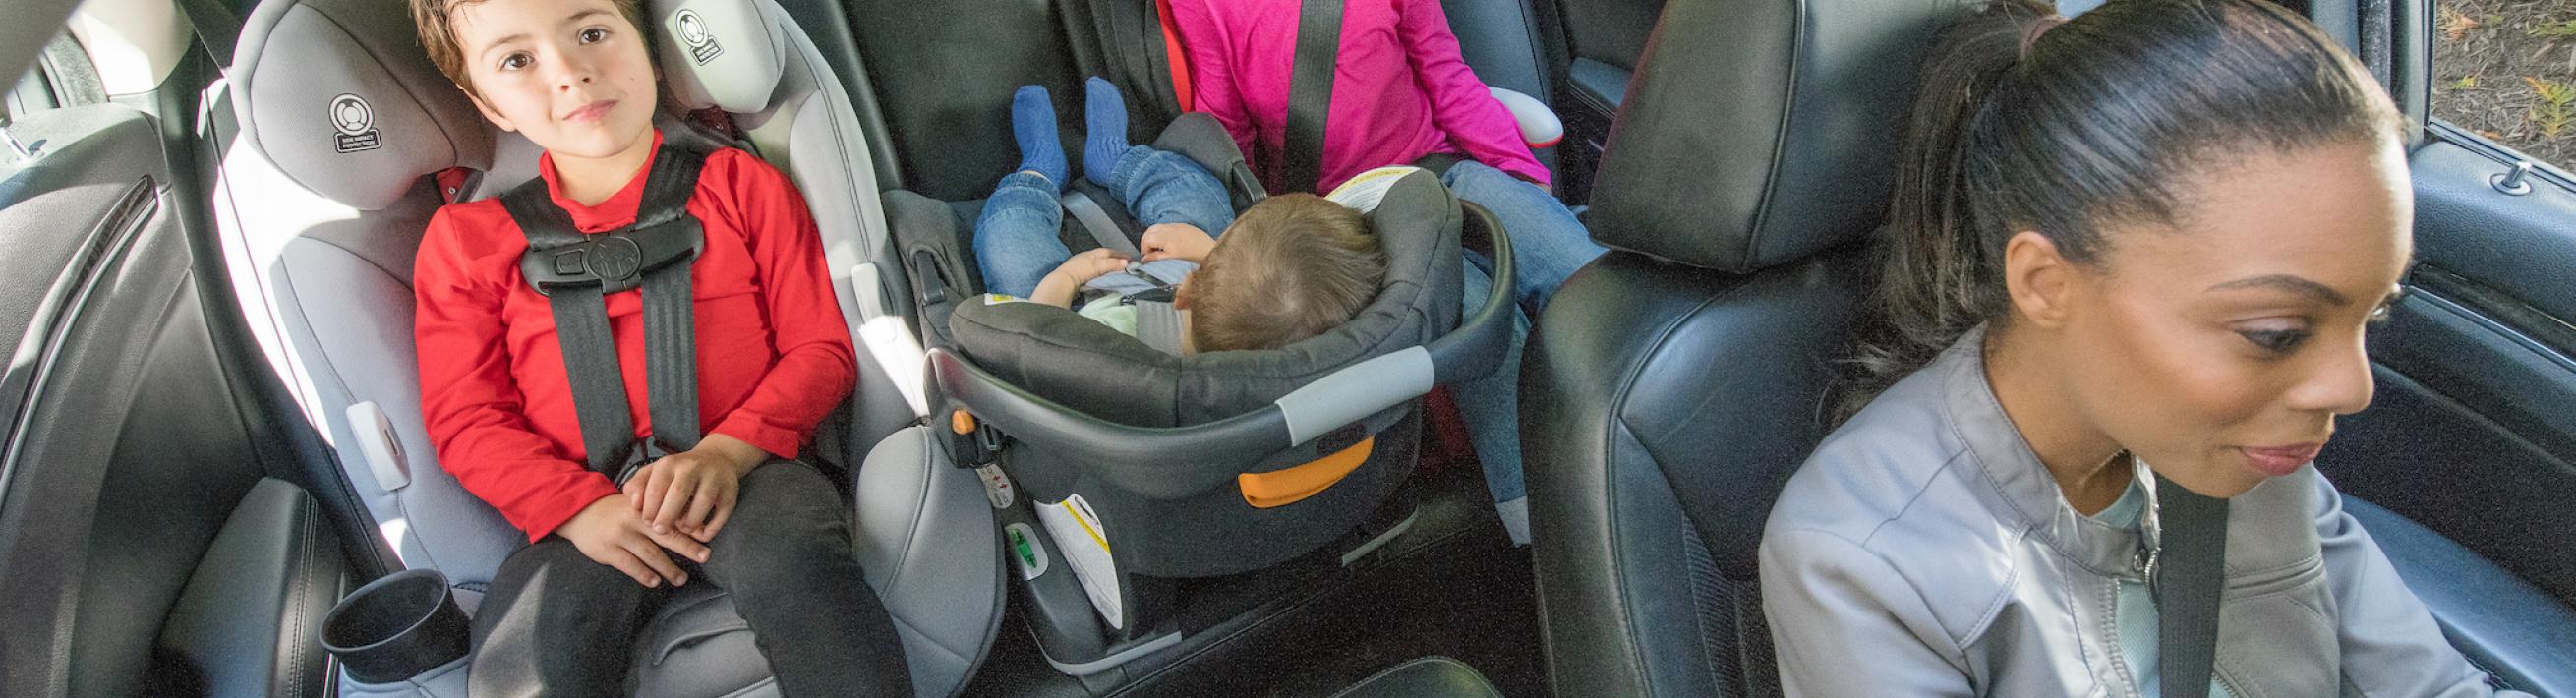 car seat kids